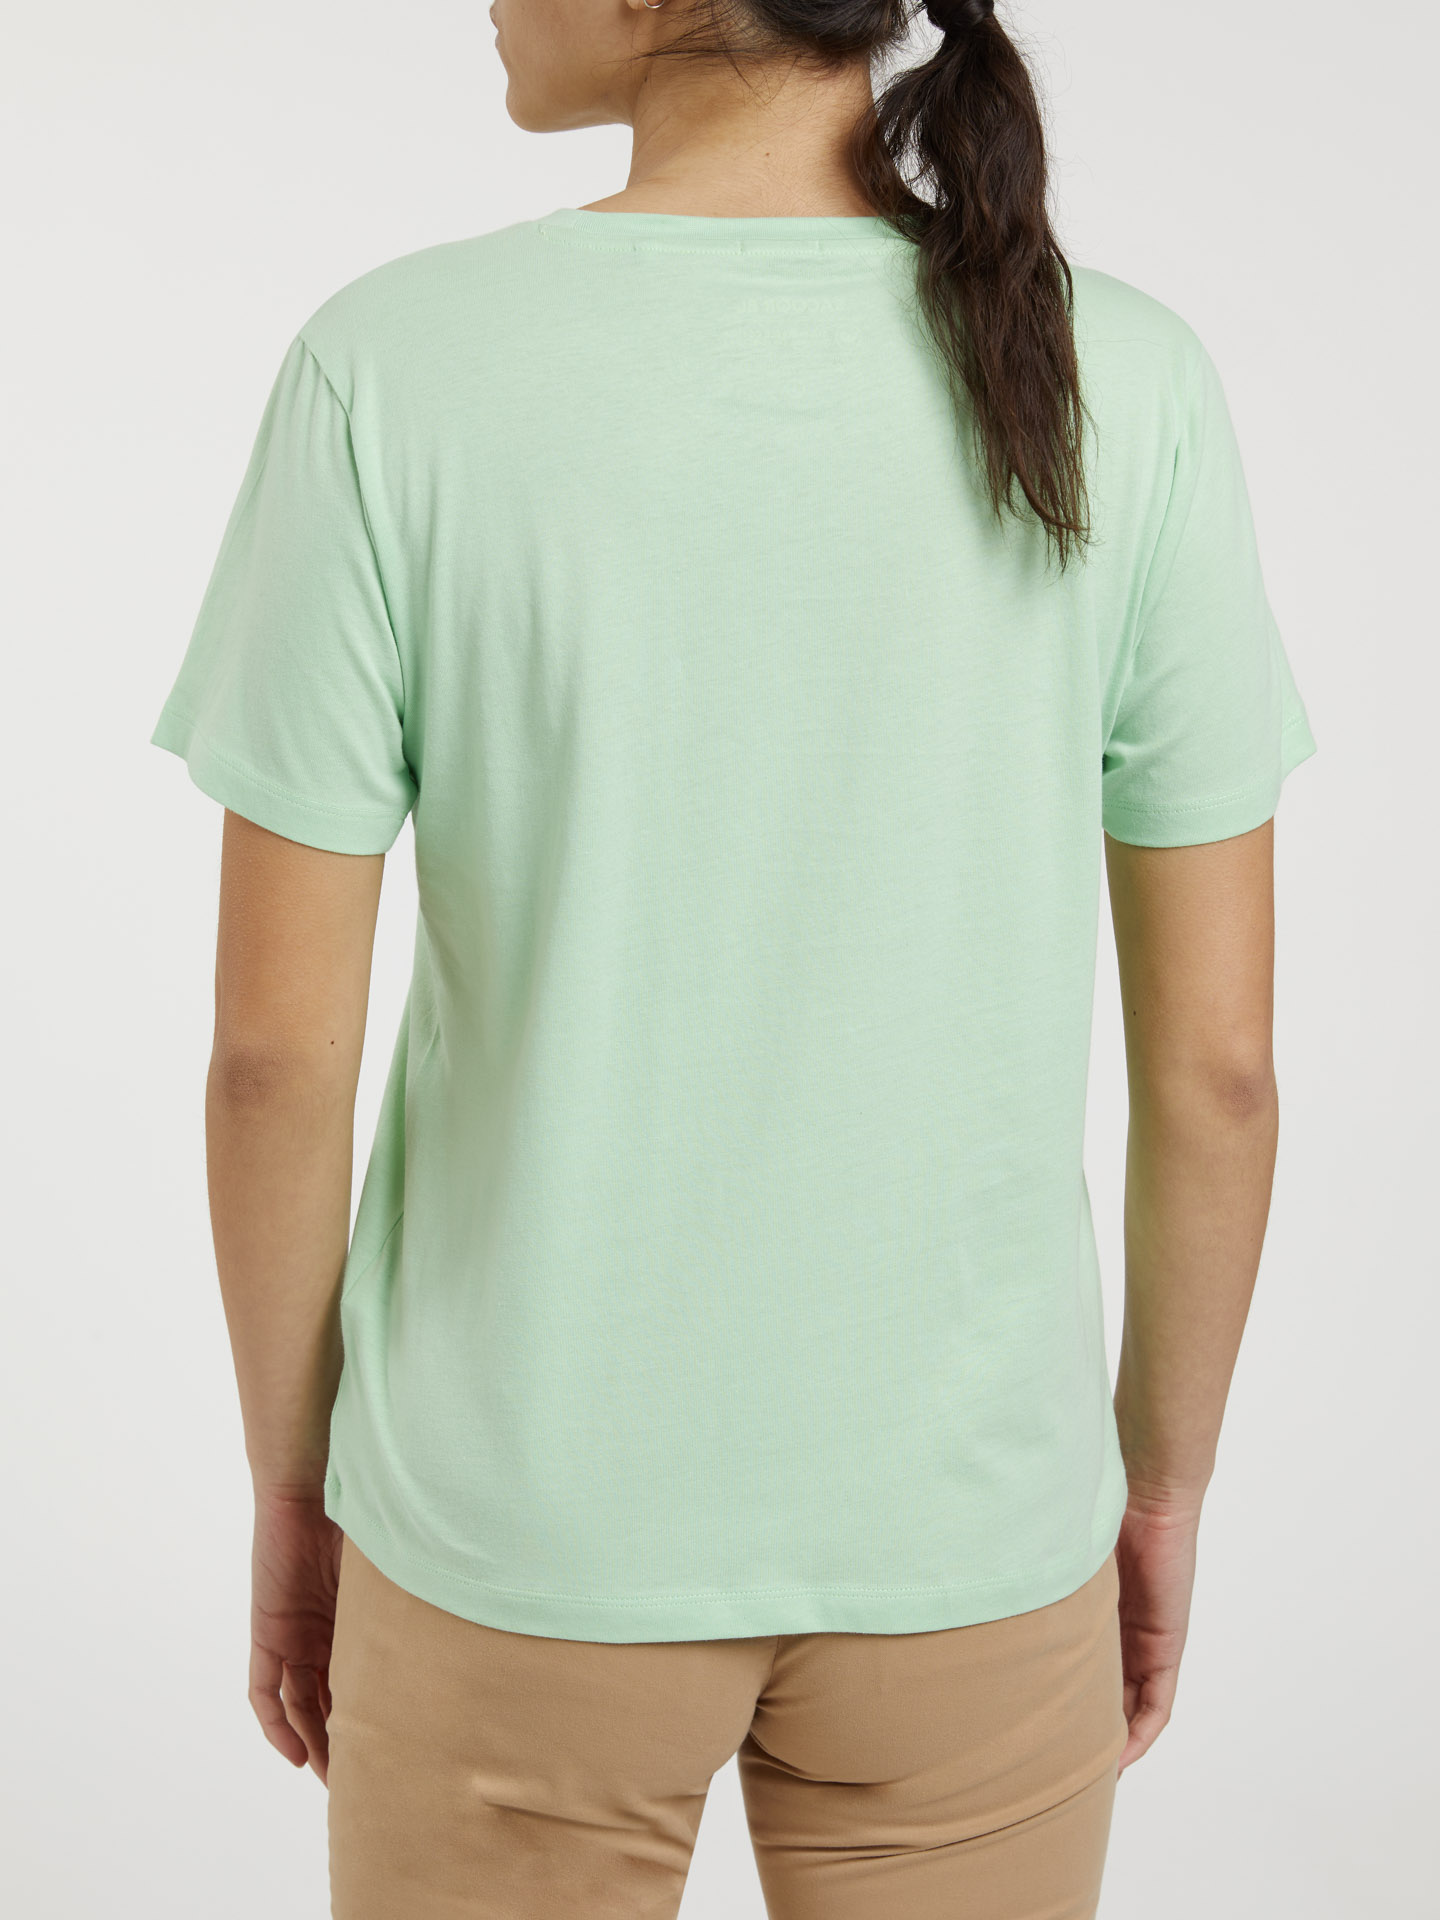 T-Shirt Green Neon Casual Woman